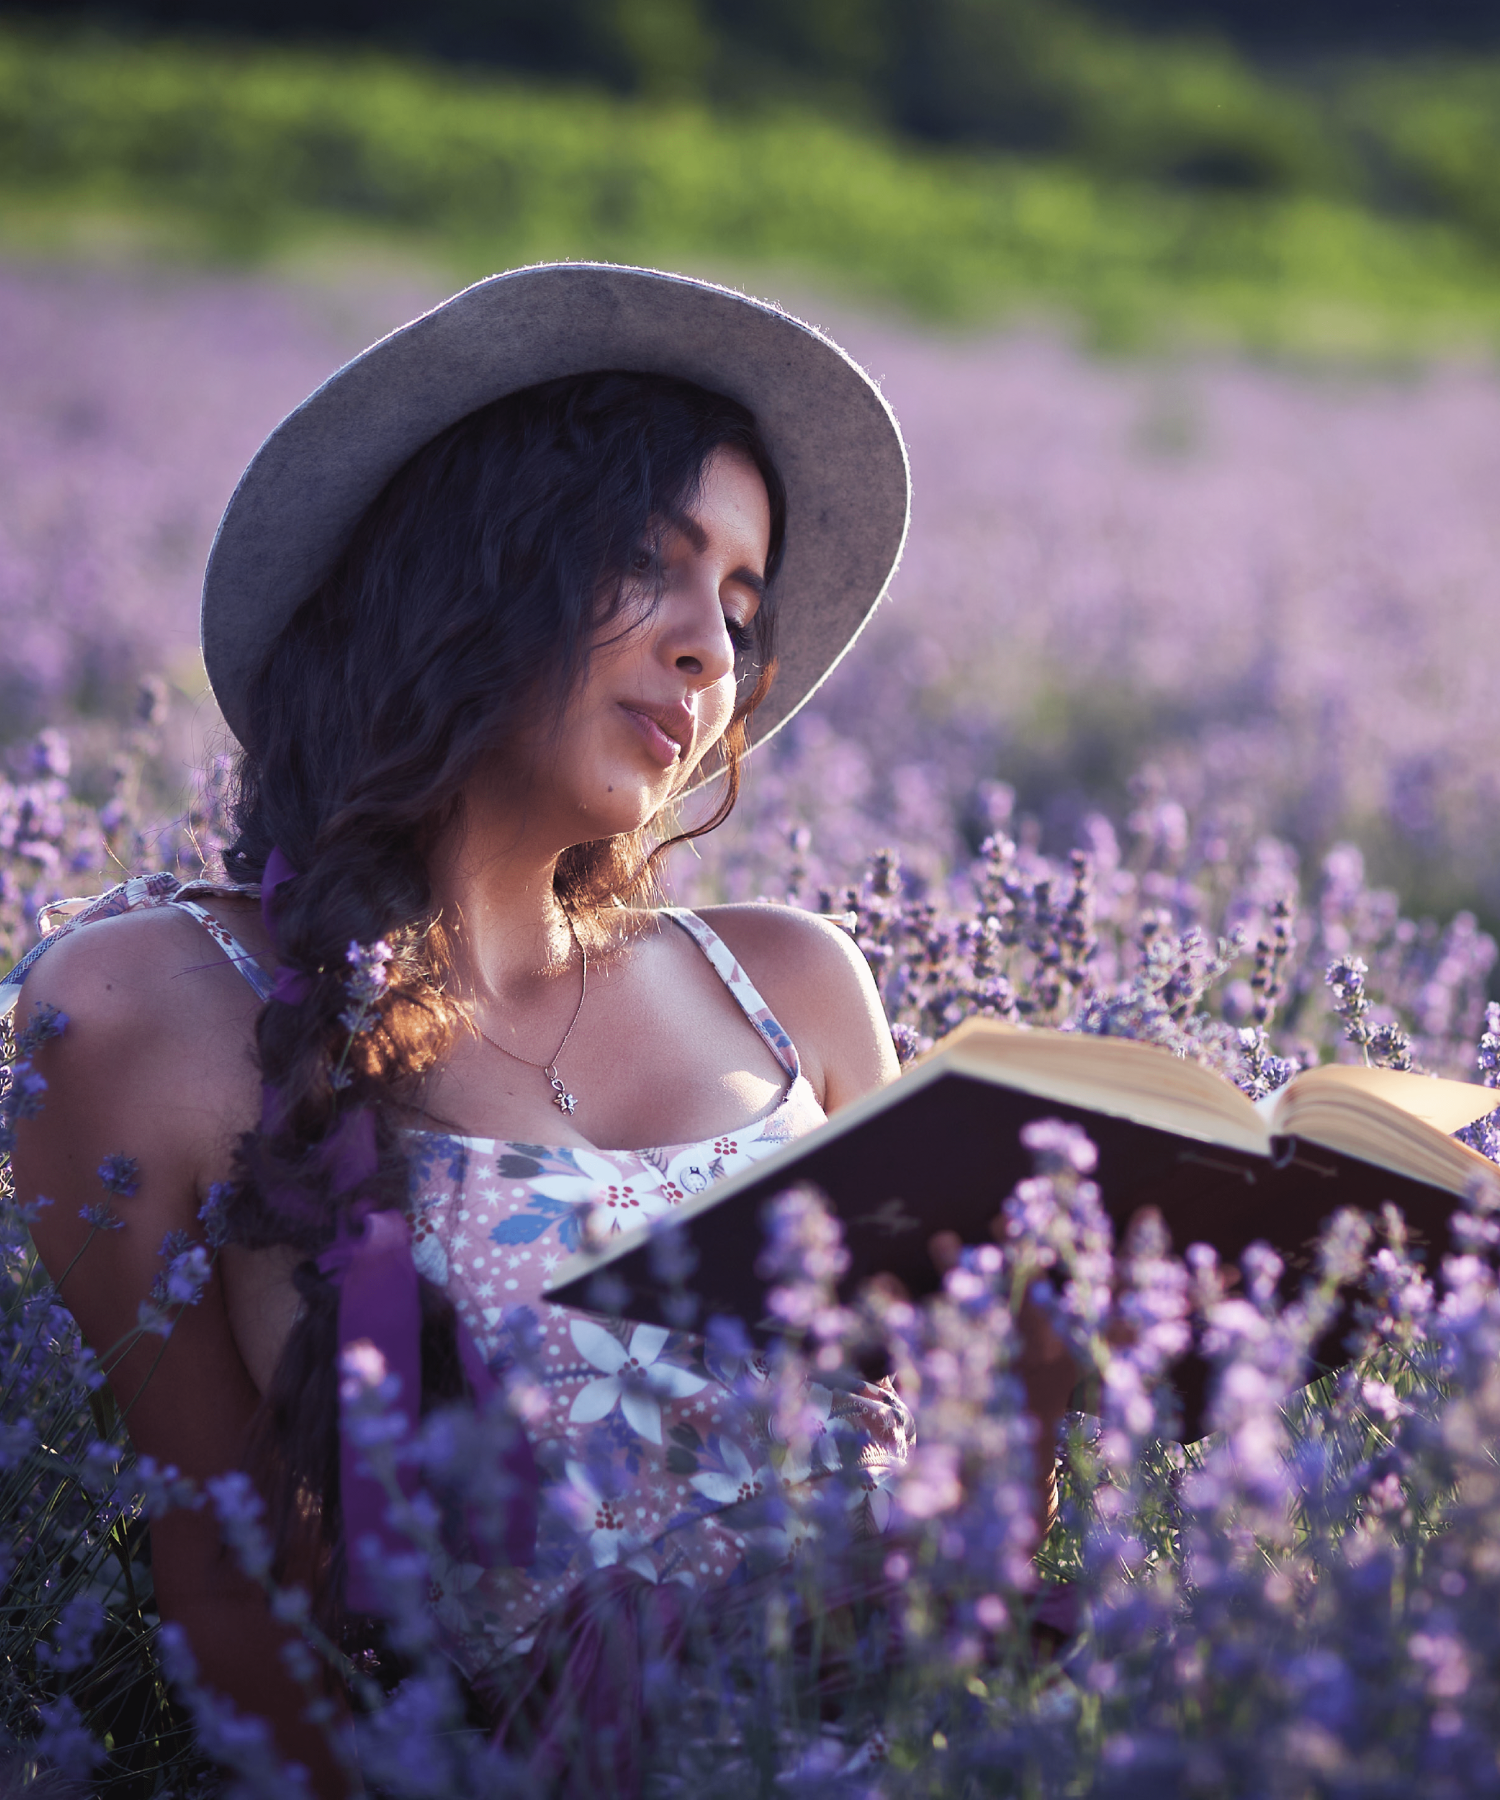 Femme en train de lire un livre dans un champ de lavande | Woman reading in a lavender field